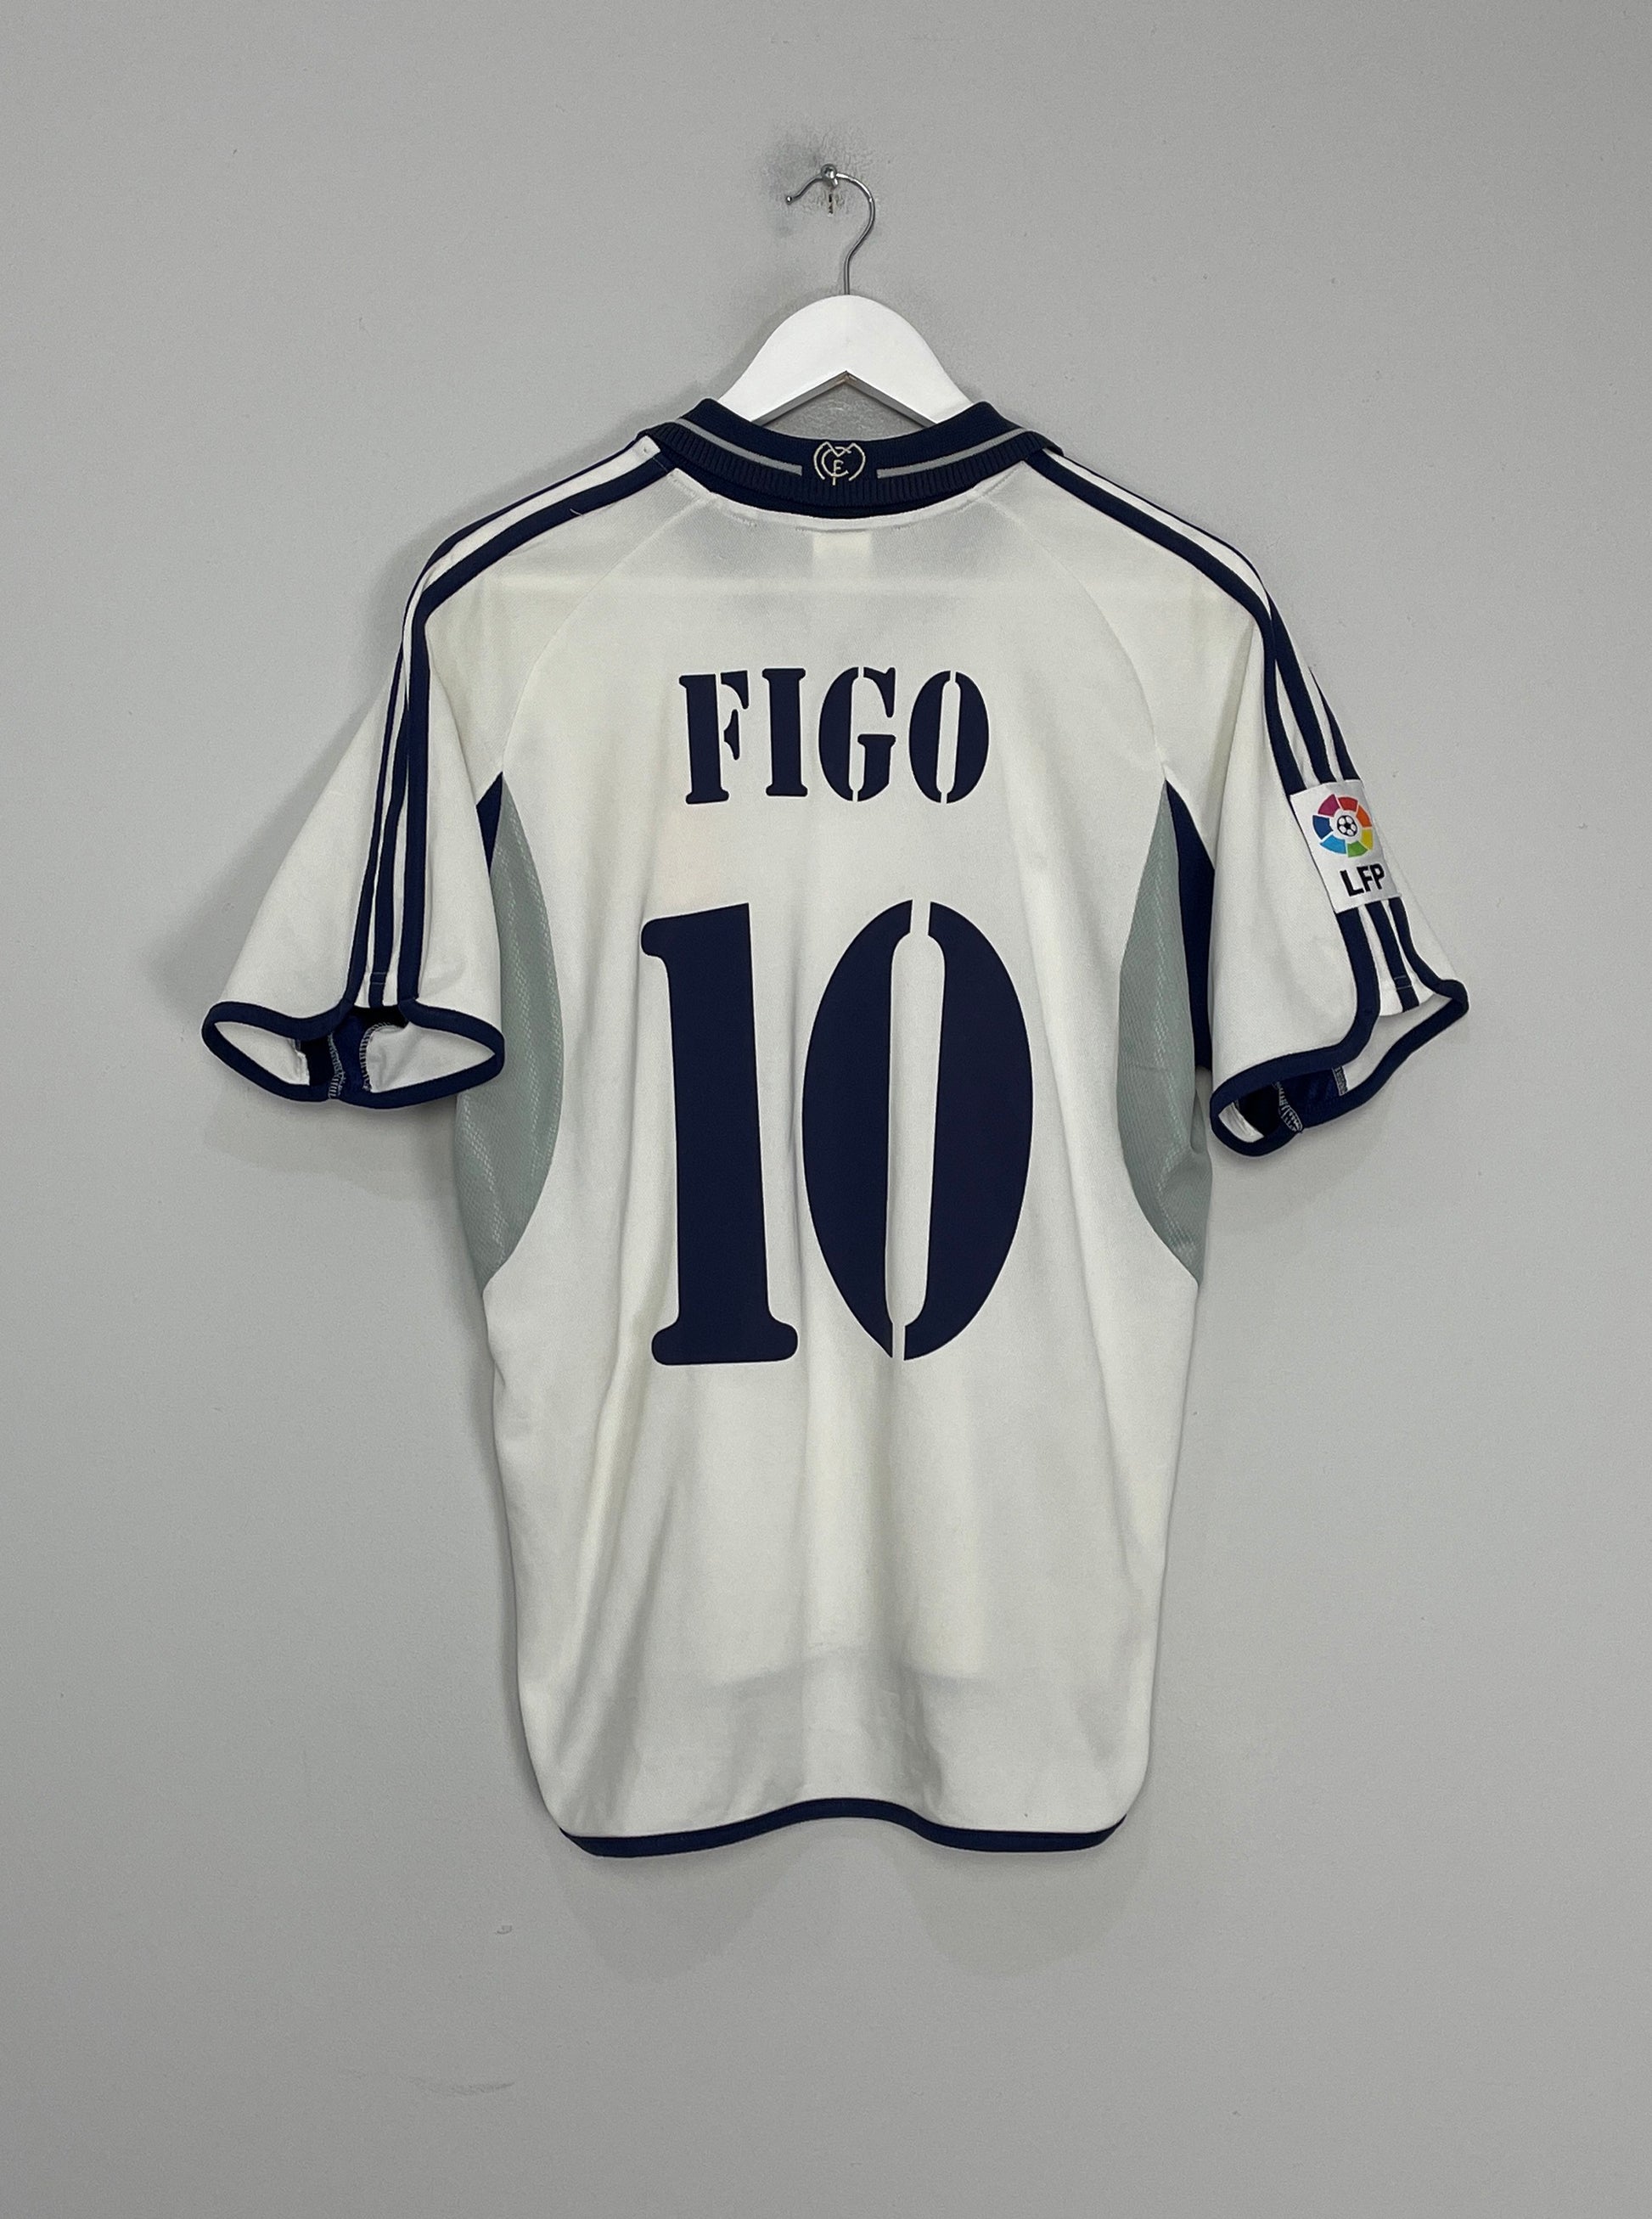 2000/01 REAL MADRID FIGO #10 HOME SHIRT (S) ADIDAS